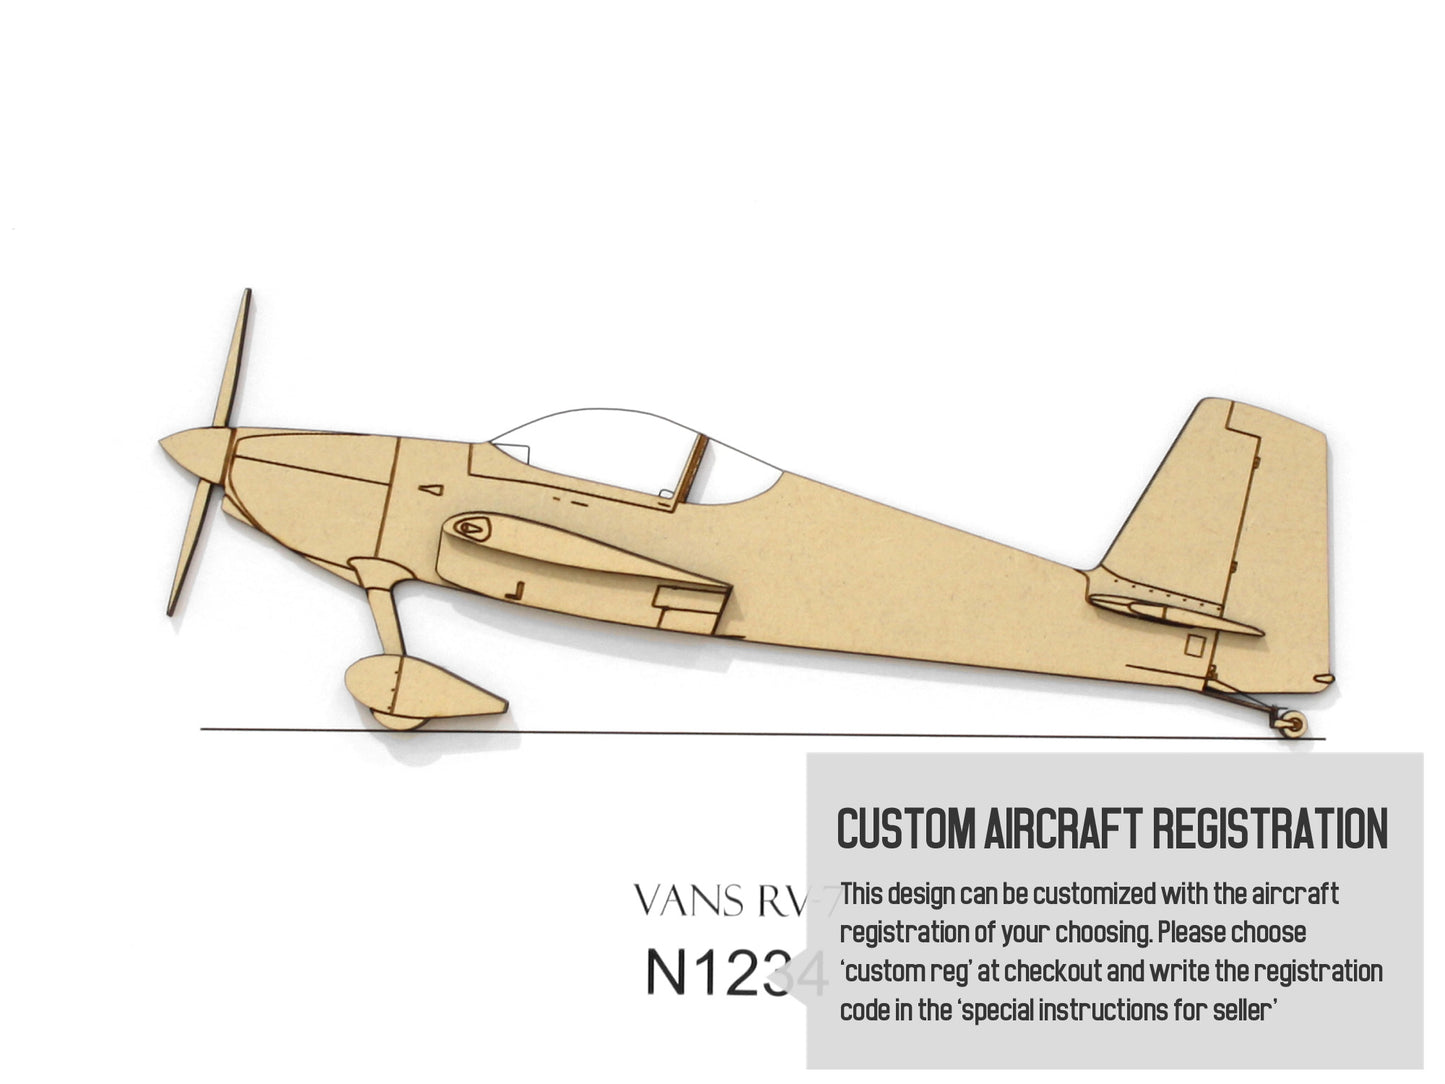 Vans RV-7 custom aviation art